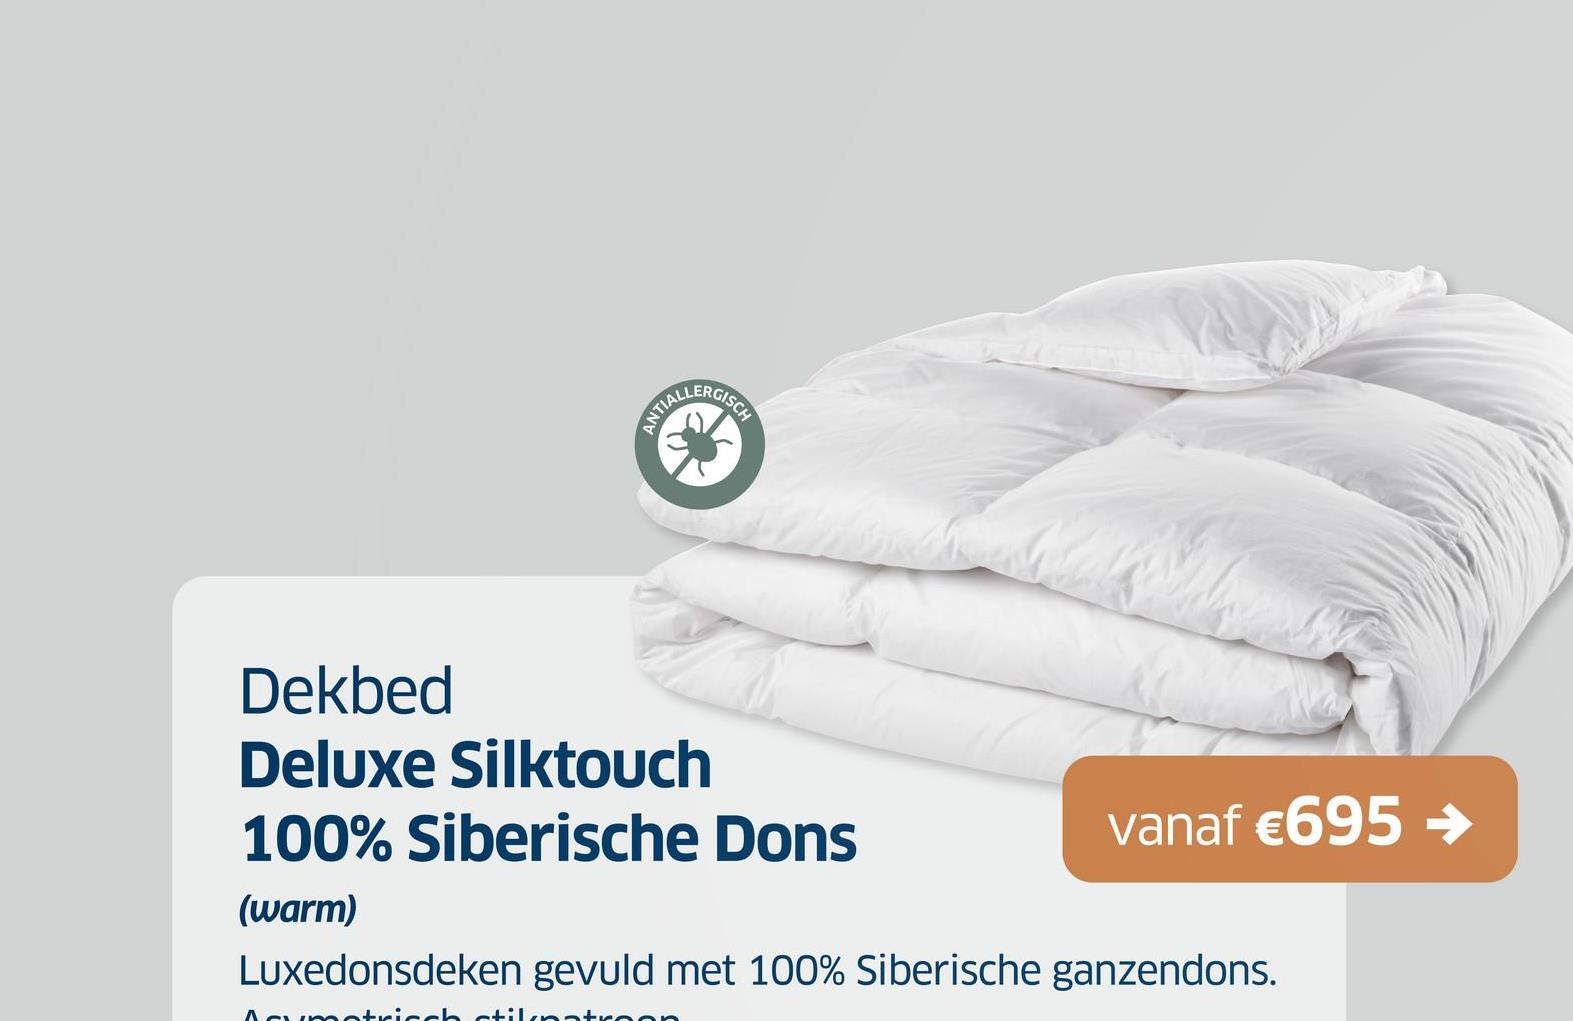 Dekbed
Deluxe Silktouch
100% Siberische Dons
(warm)
vanaf €695 →
Luxedonsdeken gevuld met 100% Siberische ganzendons.
stilpatroc